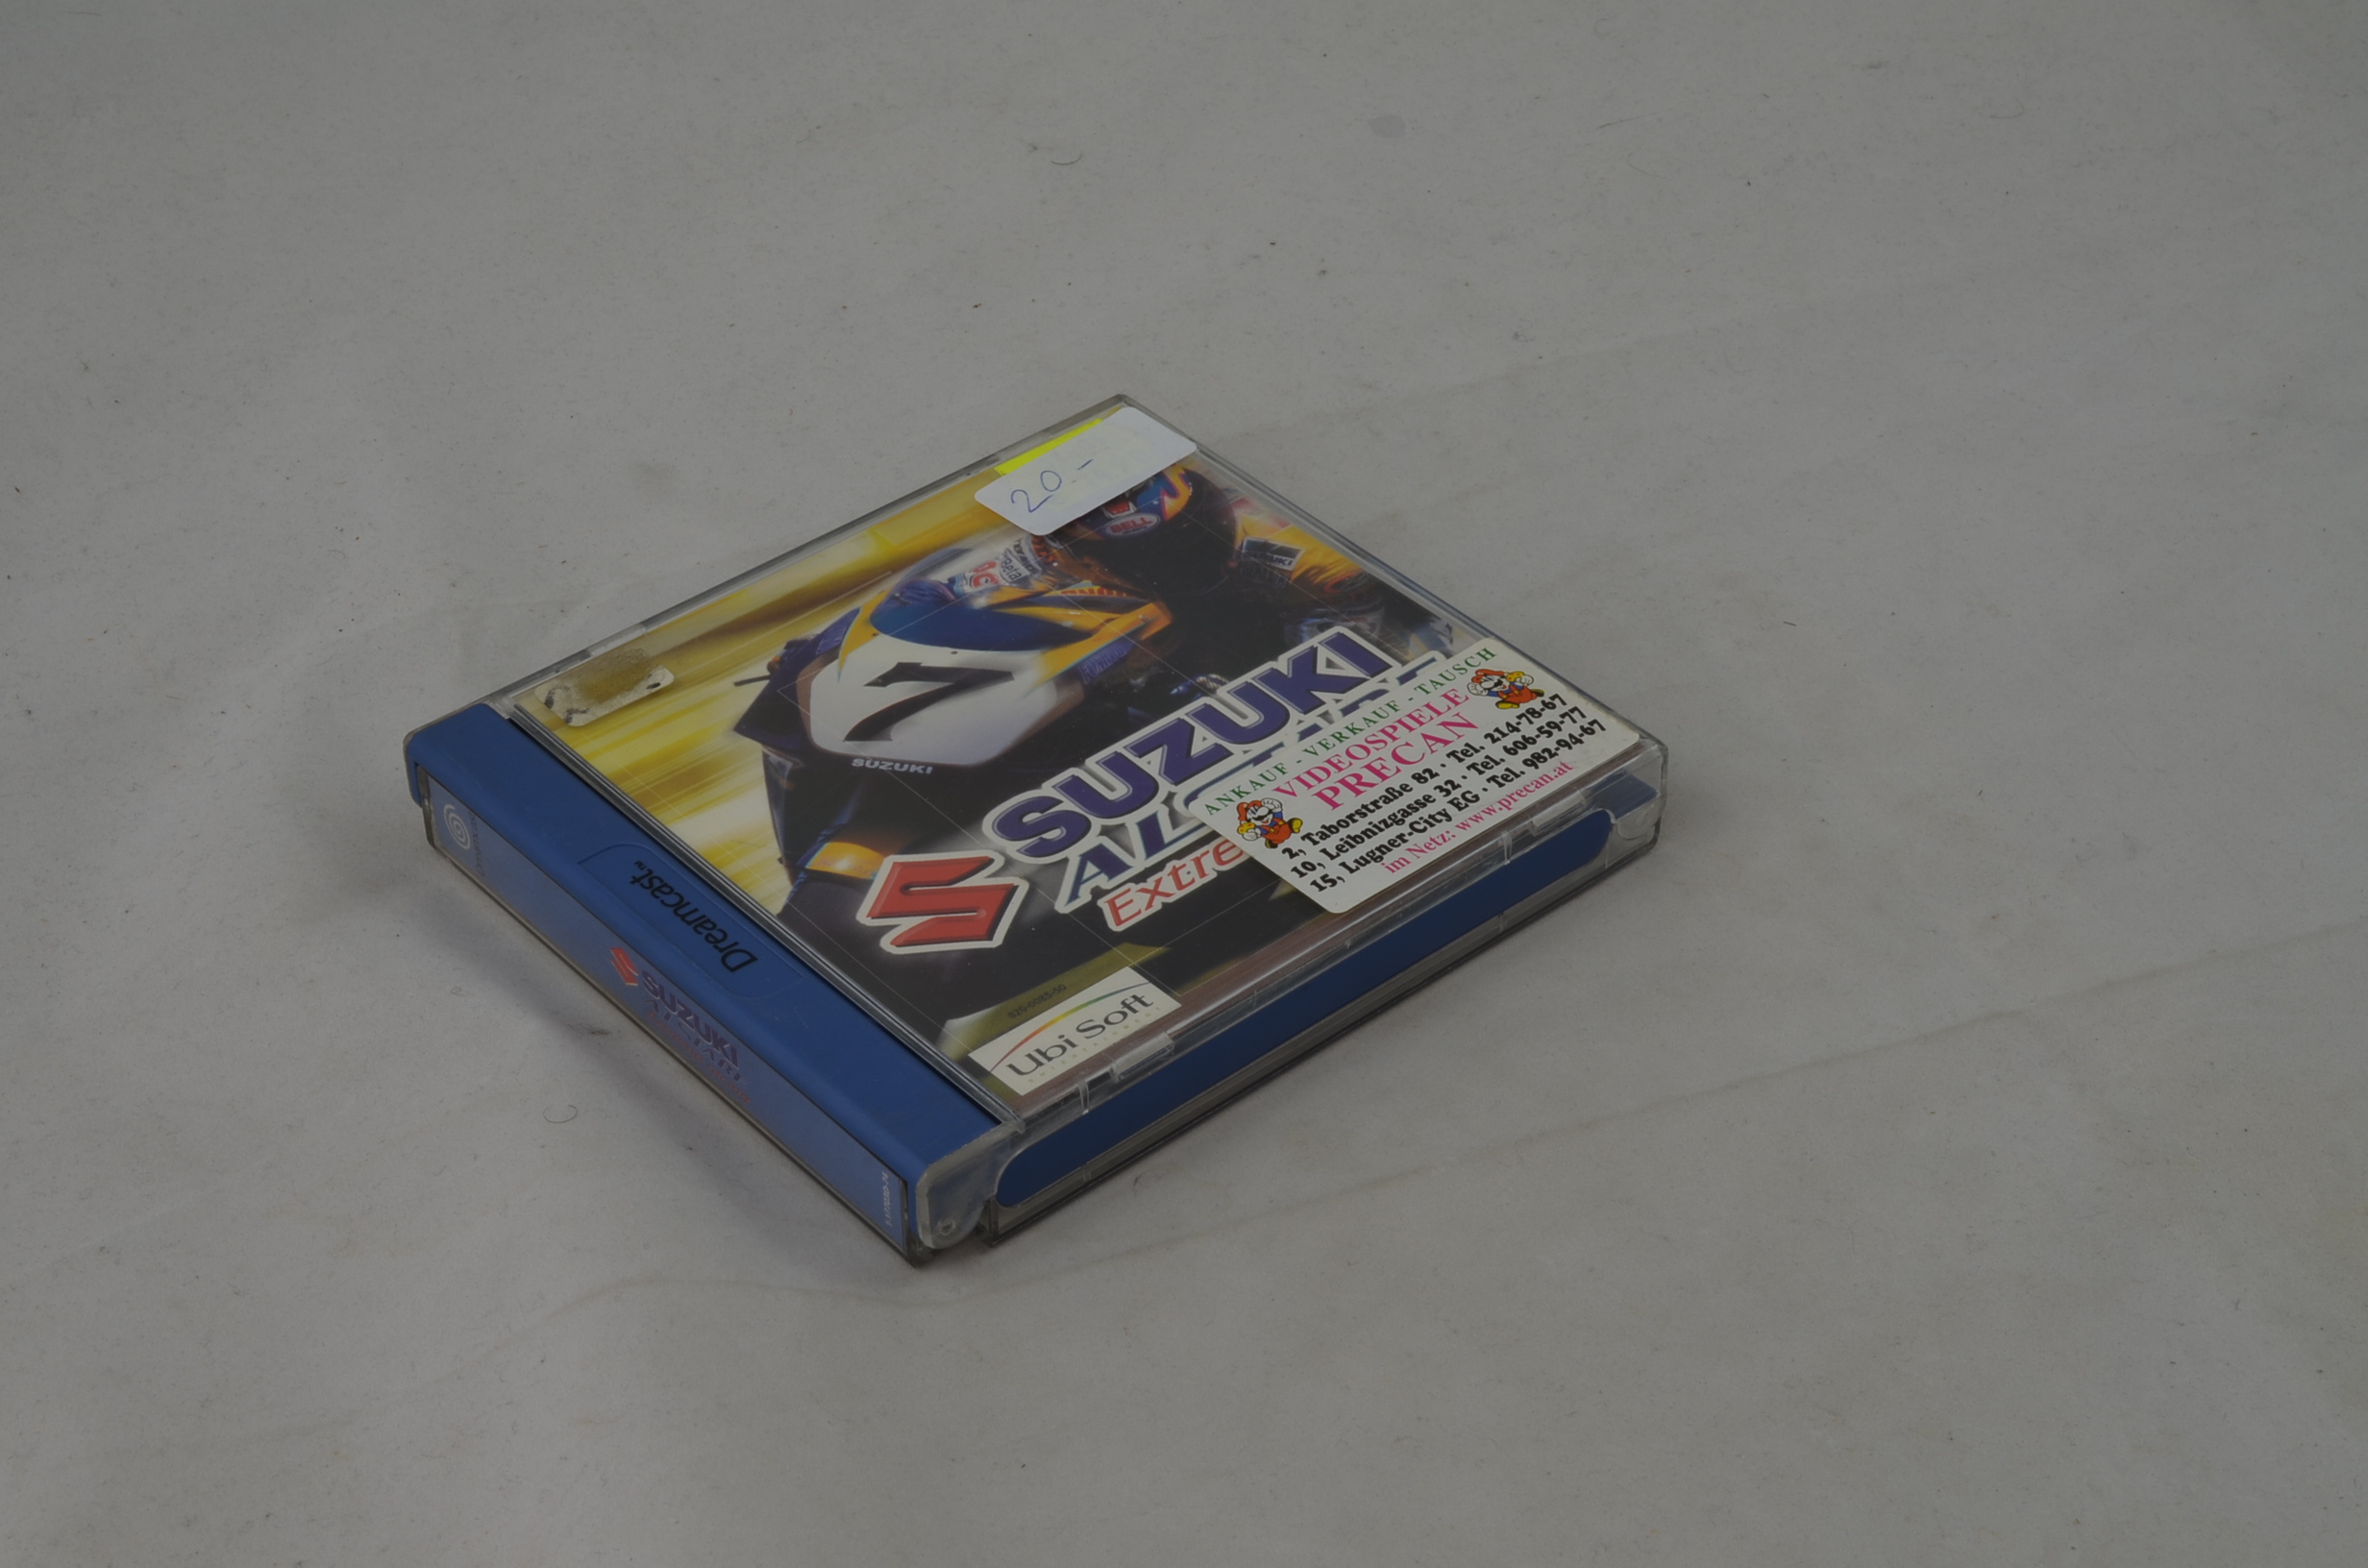 Produktbild von Suzuki Alstare Extreme Racing Dreamcast Spiel CIB (sehr gut)